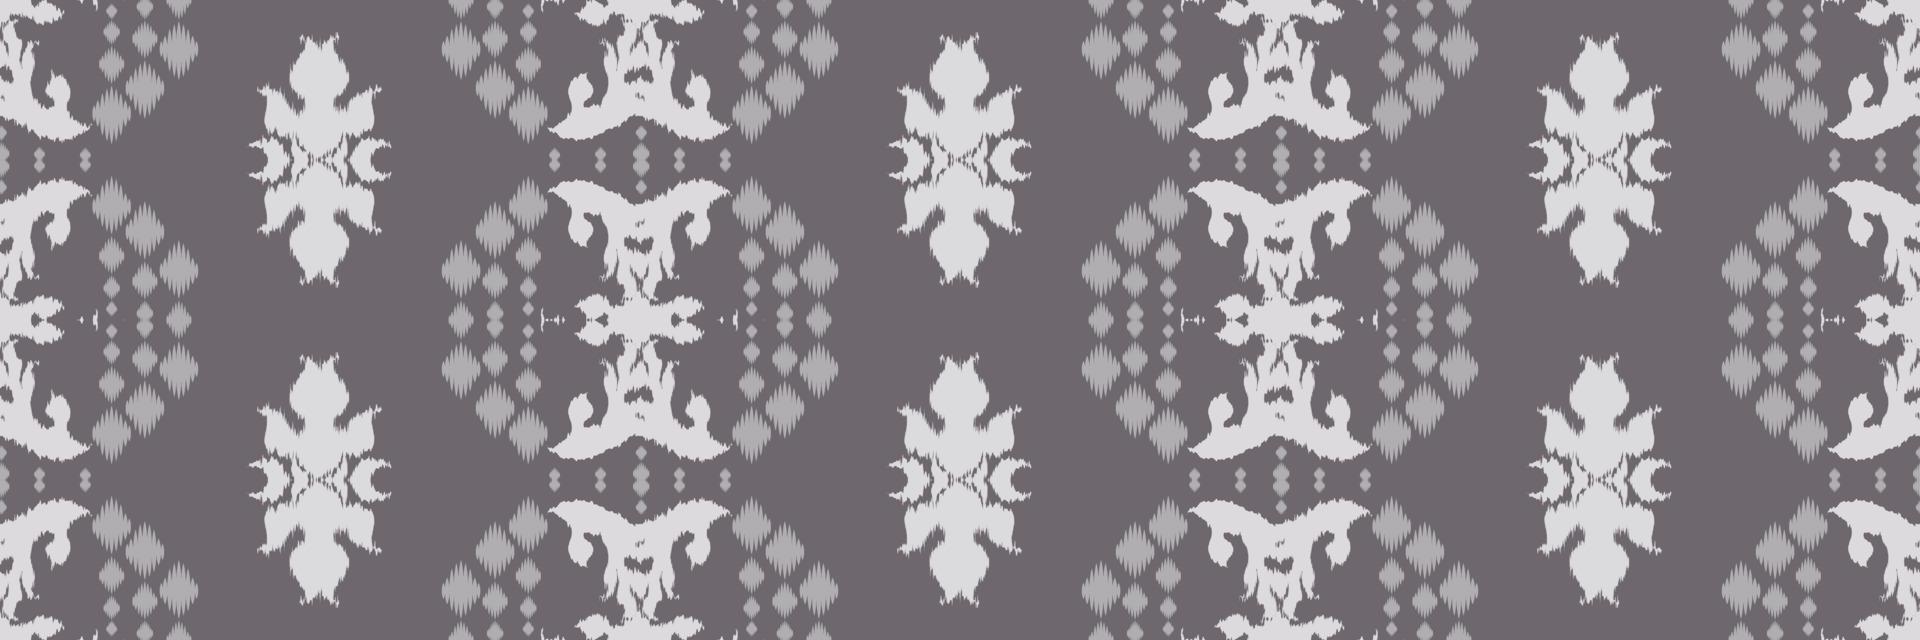 batik motivo textil filipino ikat patrón sin costuras diseño de vector digital para imprimir saree kurti borneo borde de tela símbolos de pincel muestras diseñador